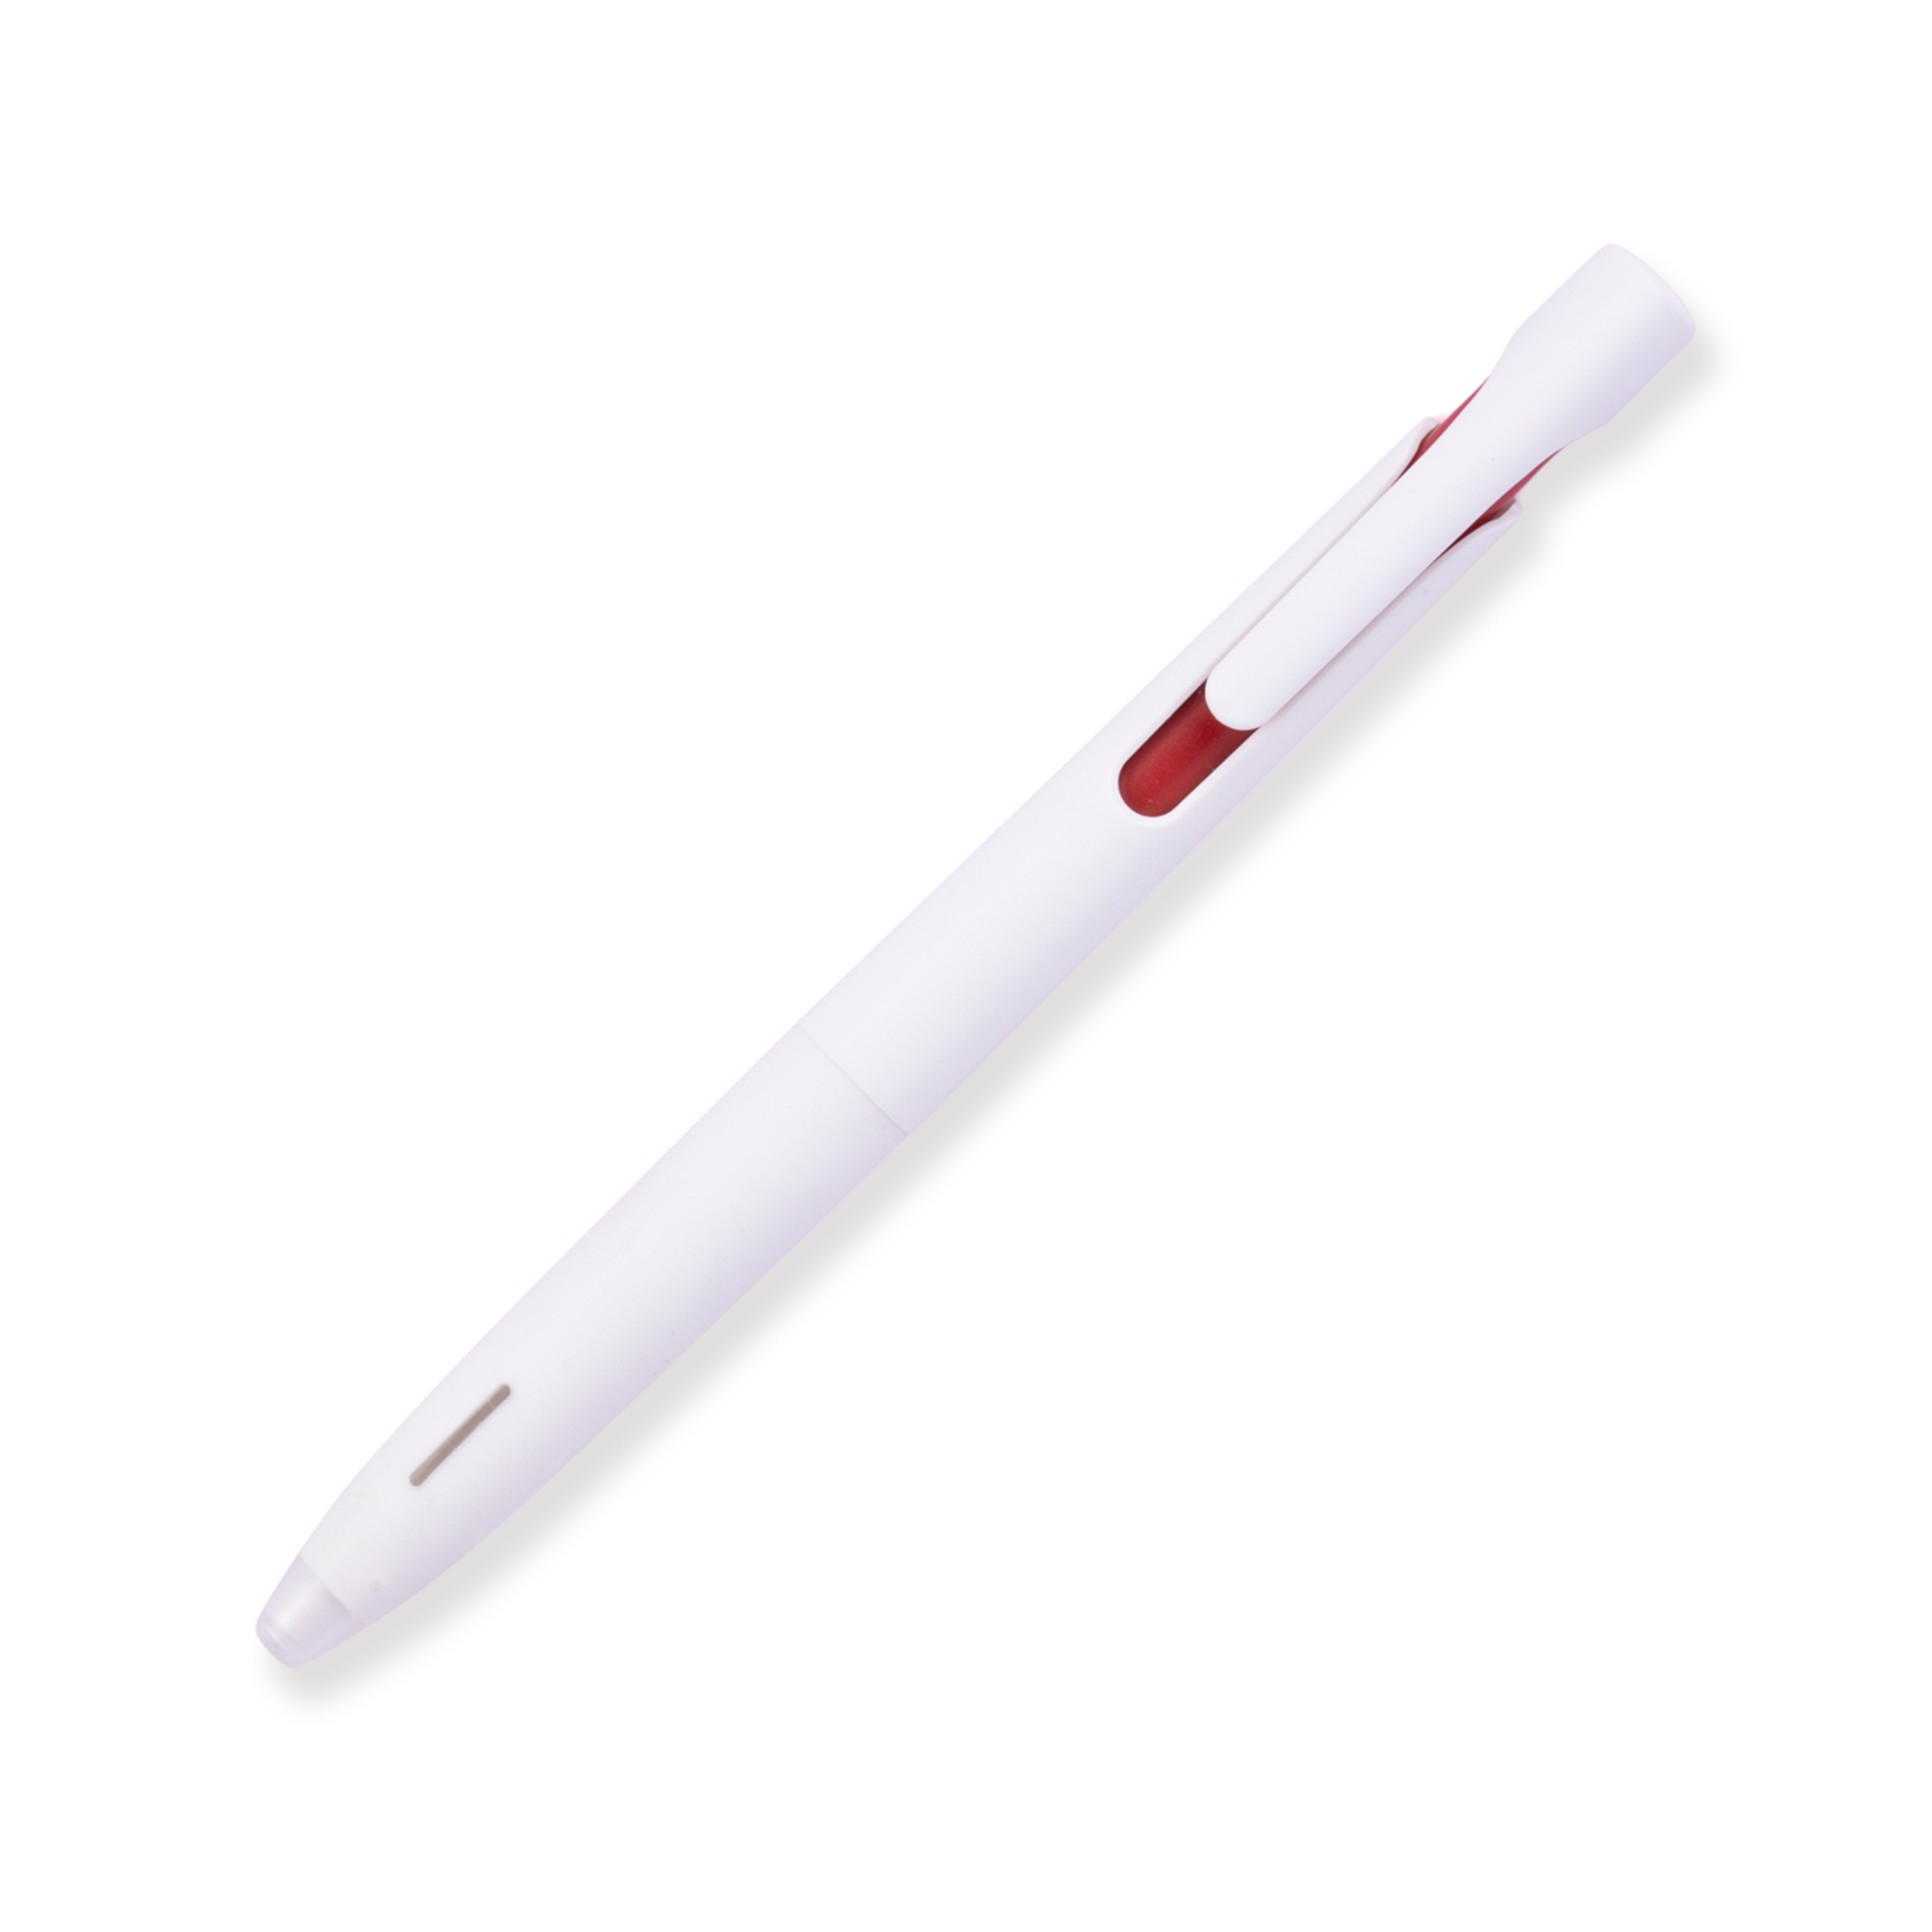 Zebra Blen Pen - 0,5 mm - Weißer Schaft - Rote Tinte